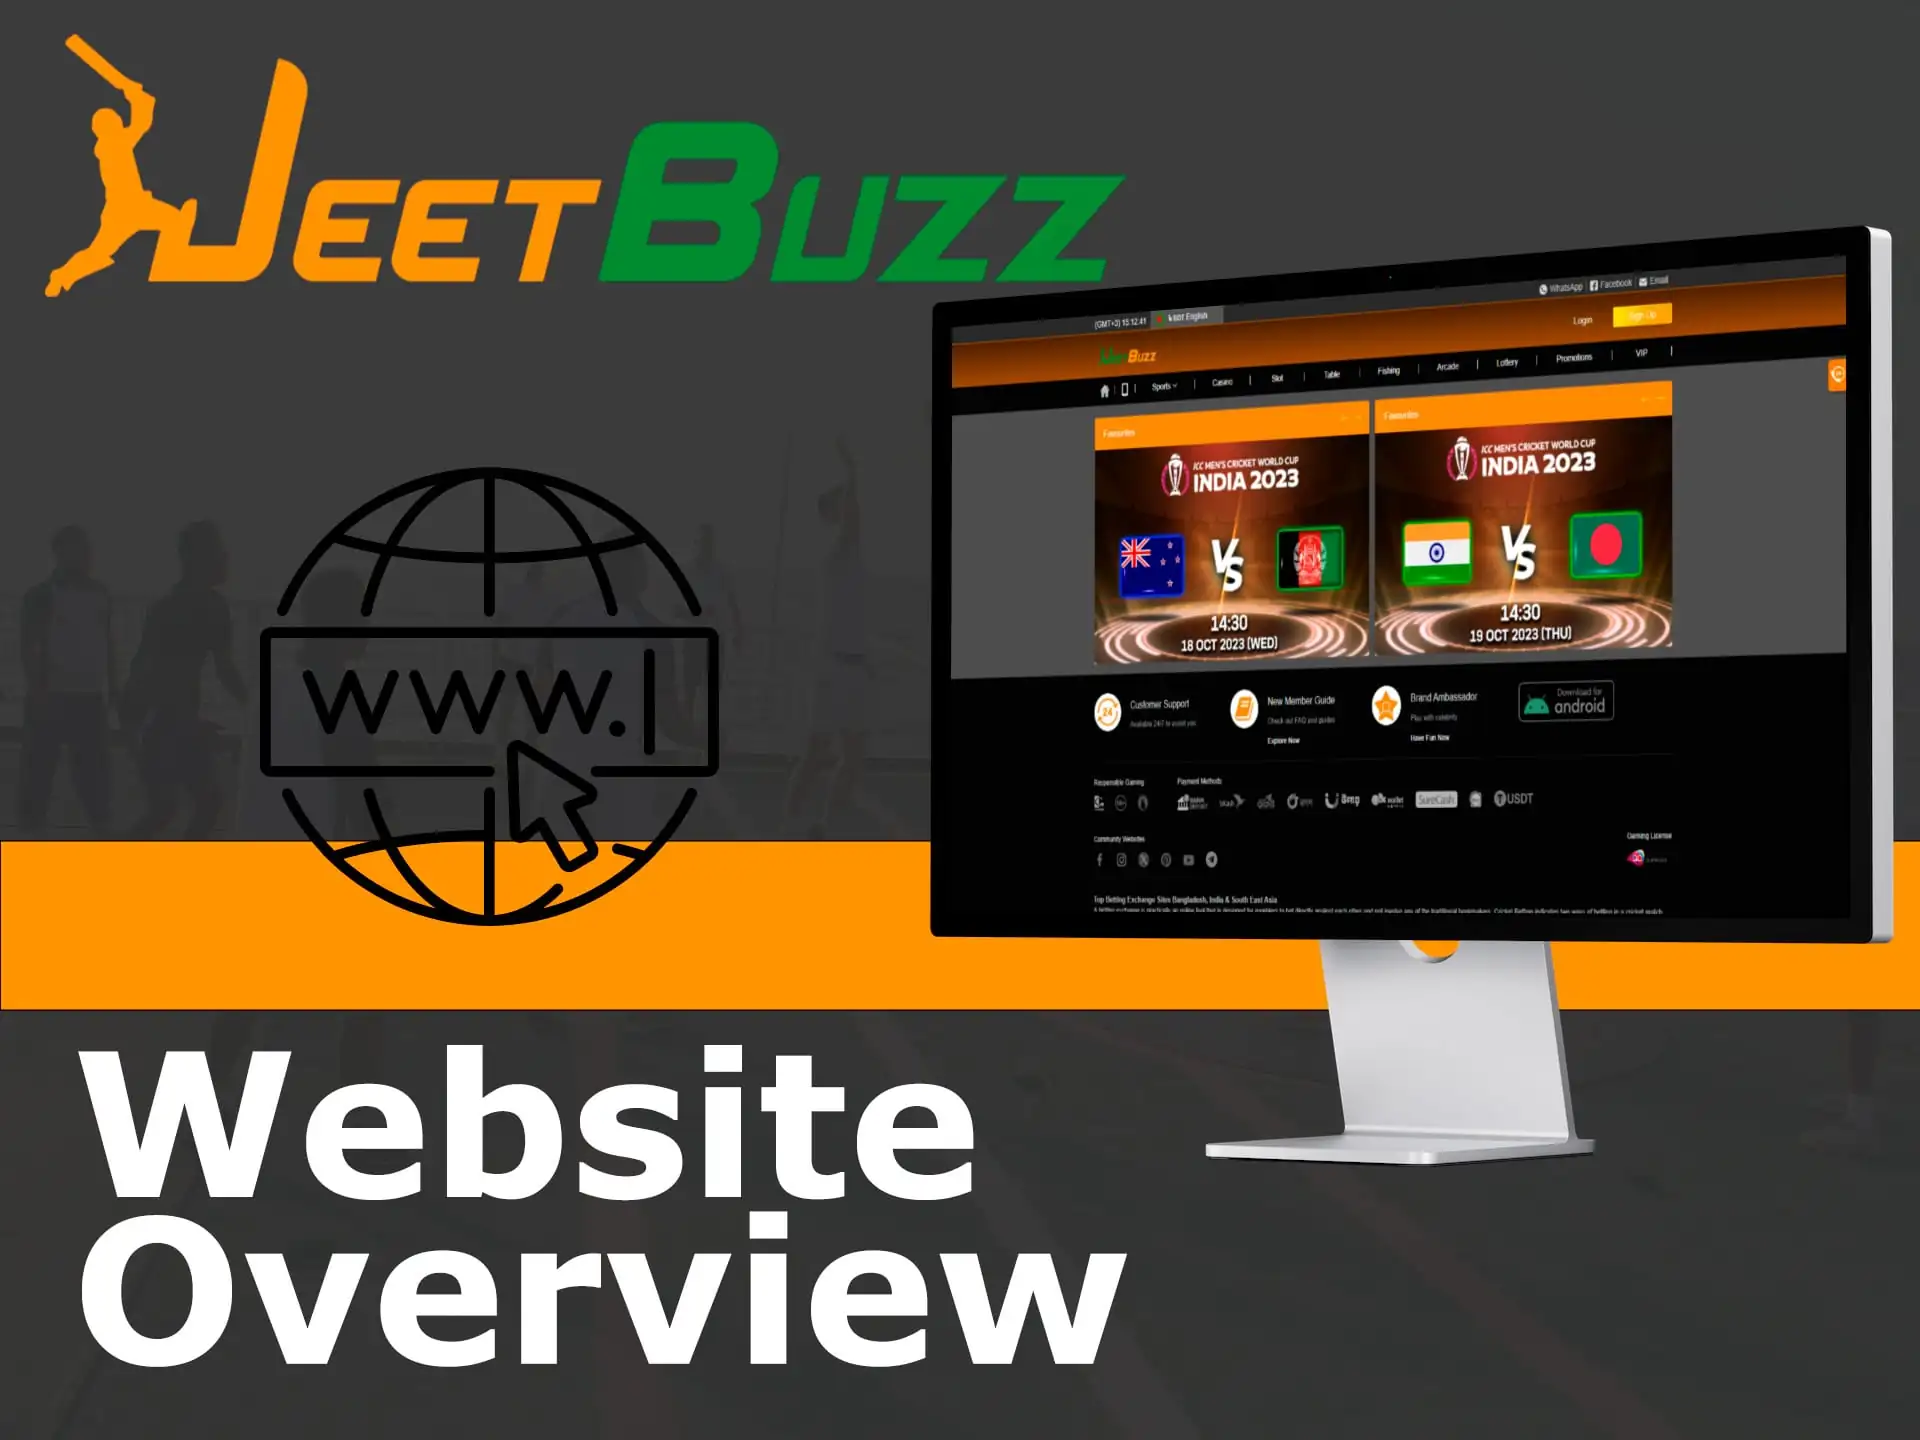 jeetbuzz.io website overview